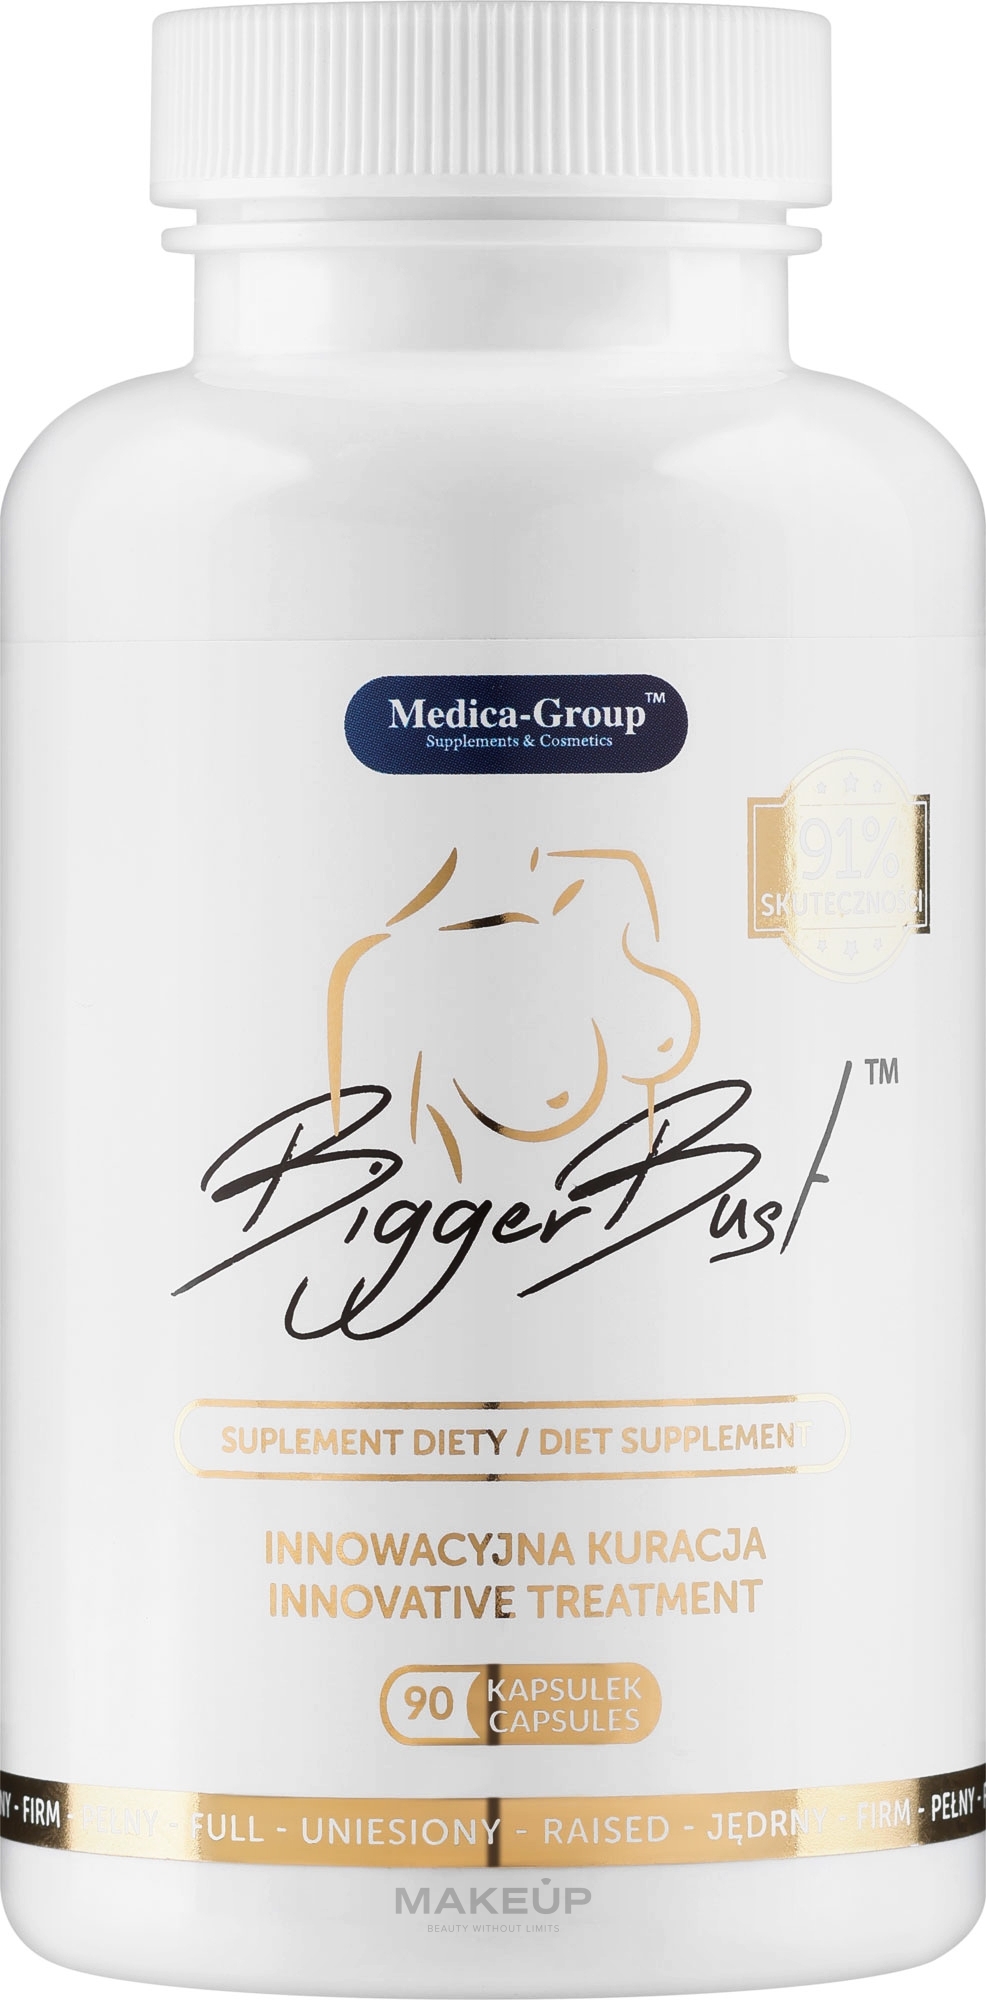 Suplement diety ujędrniający i powiększający biust - Medica-Group Bigger Bust — Zdjęcie 90 szt.